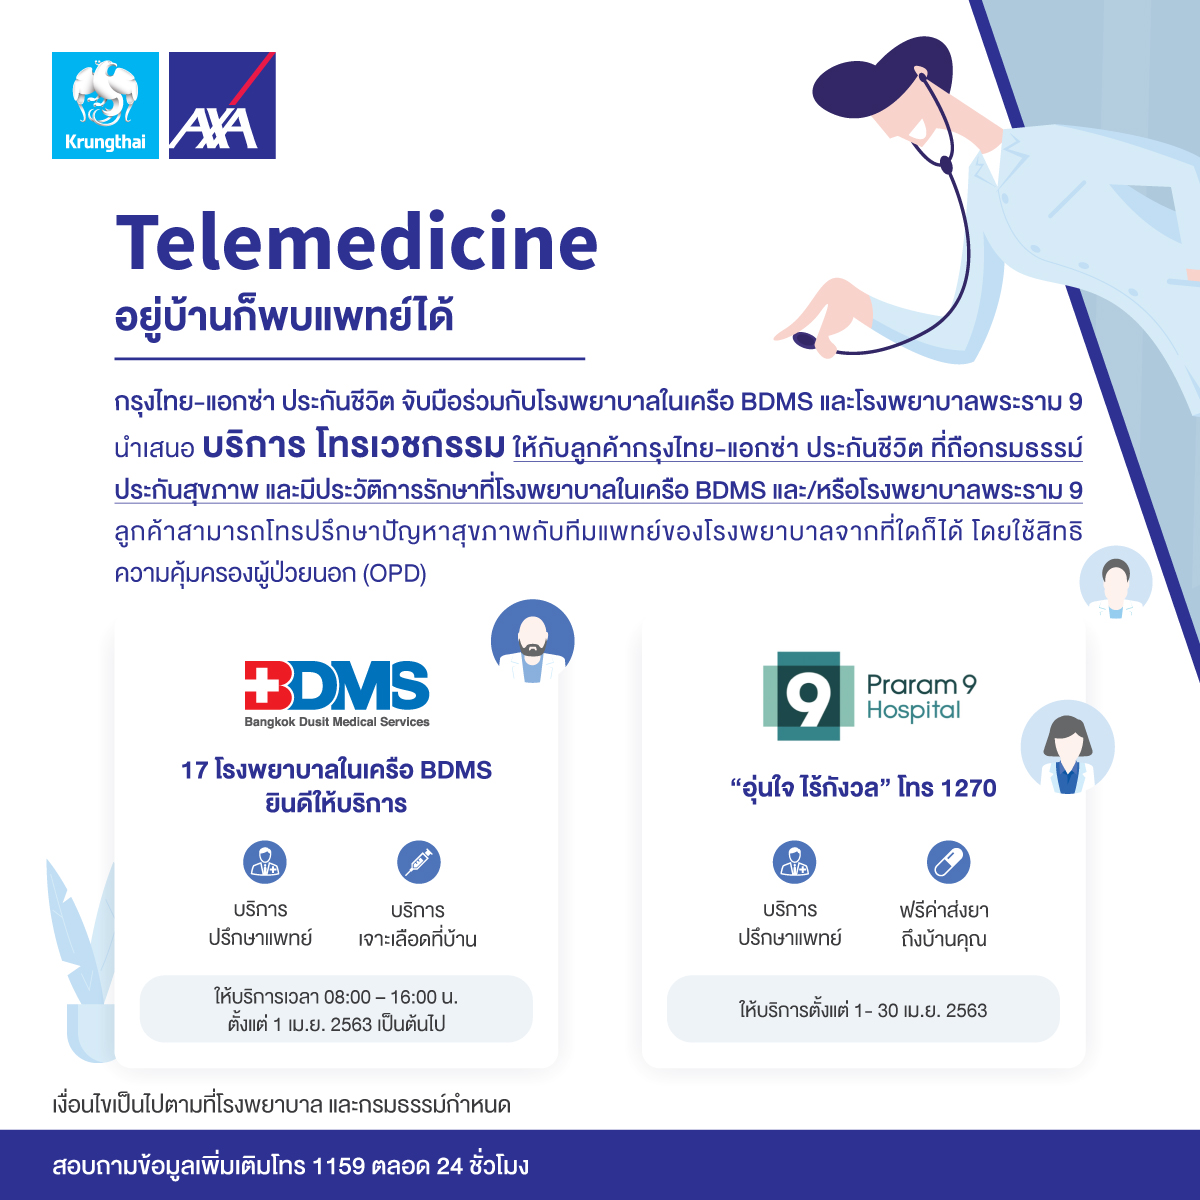 กรุงไทย-แอกซ่า ประกันชีวิต จับมือร่วมกับโรงพยาบาลในเครือ BDMS และโรงพยาบาลพระราม 9 ให้บริการรูปแบบใหม่ Telemedicine